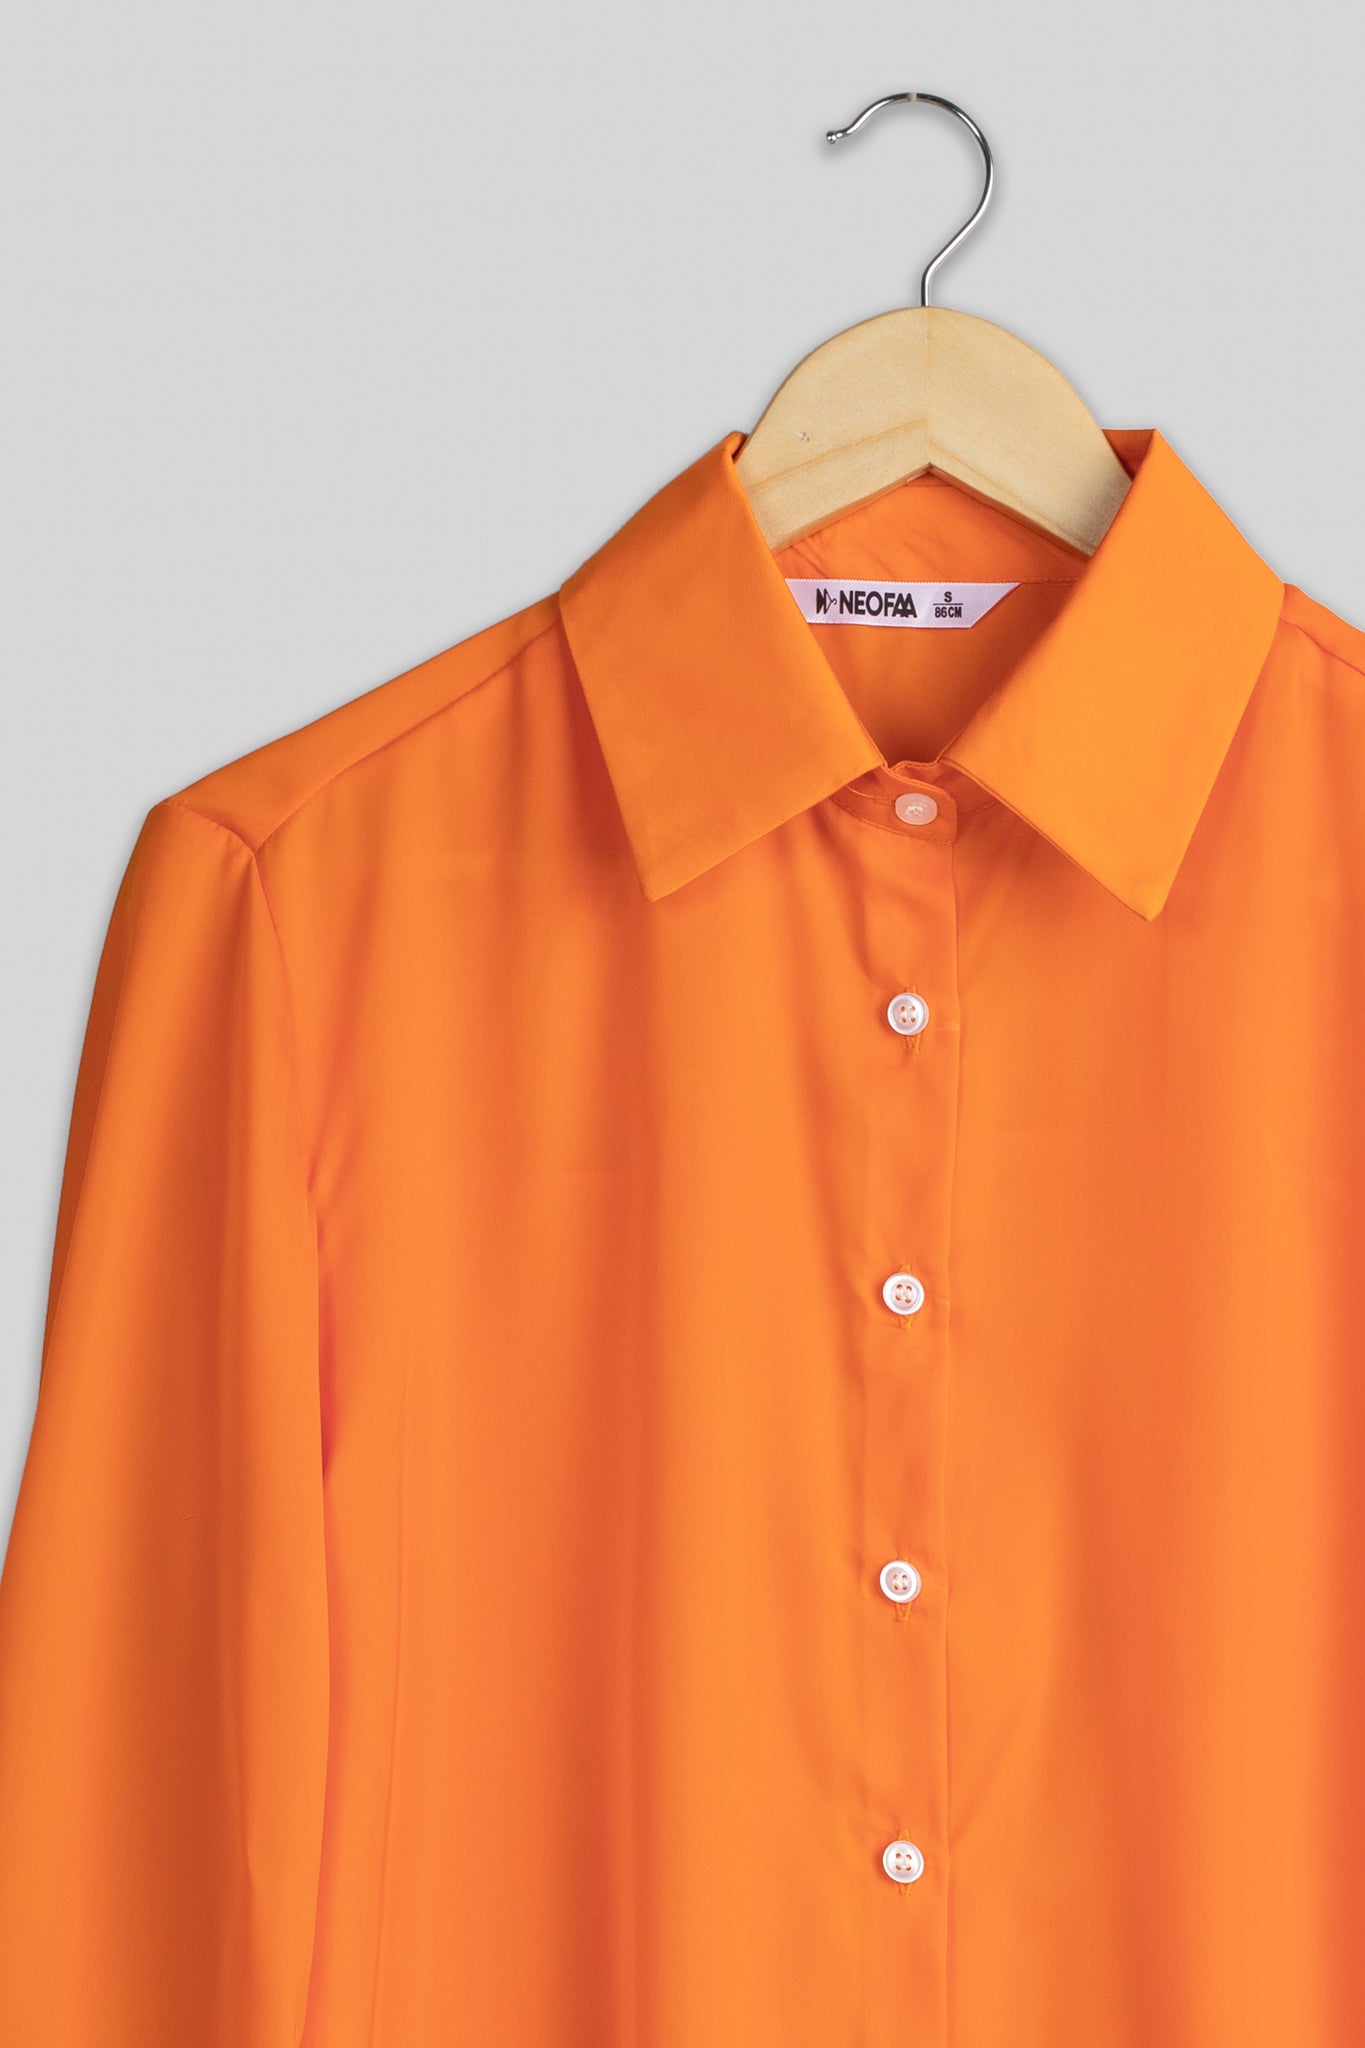 Sunset Orange Bell Sleeve Shirt For Women